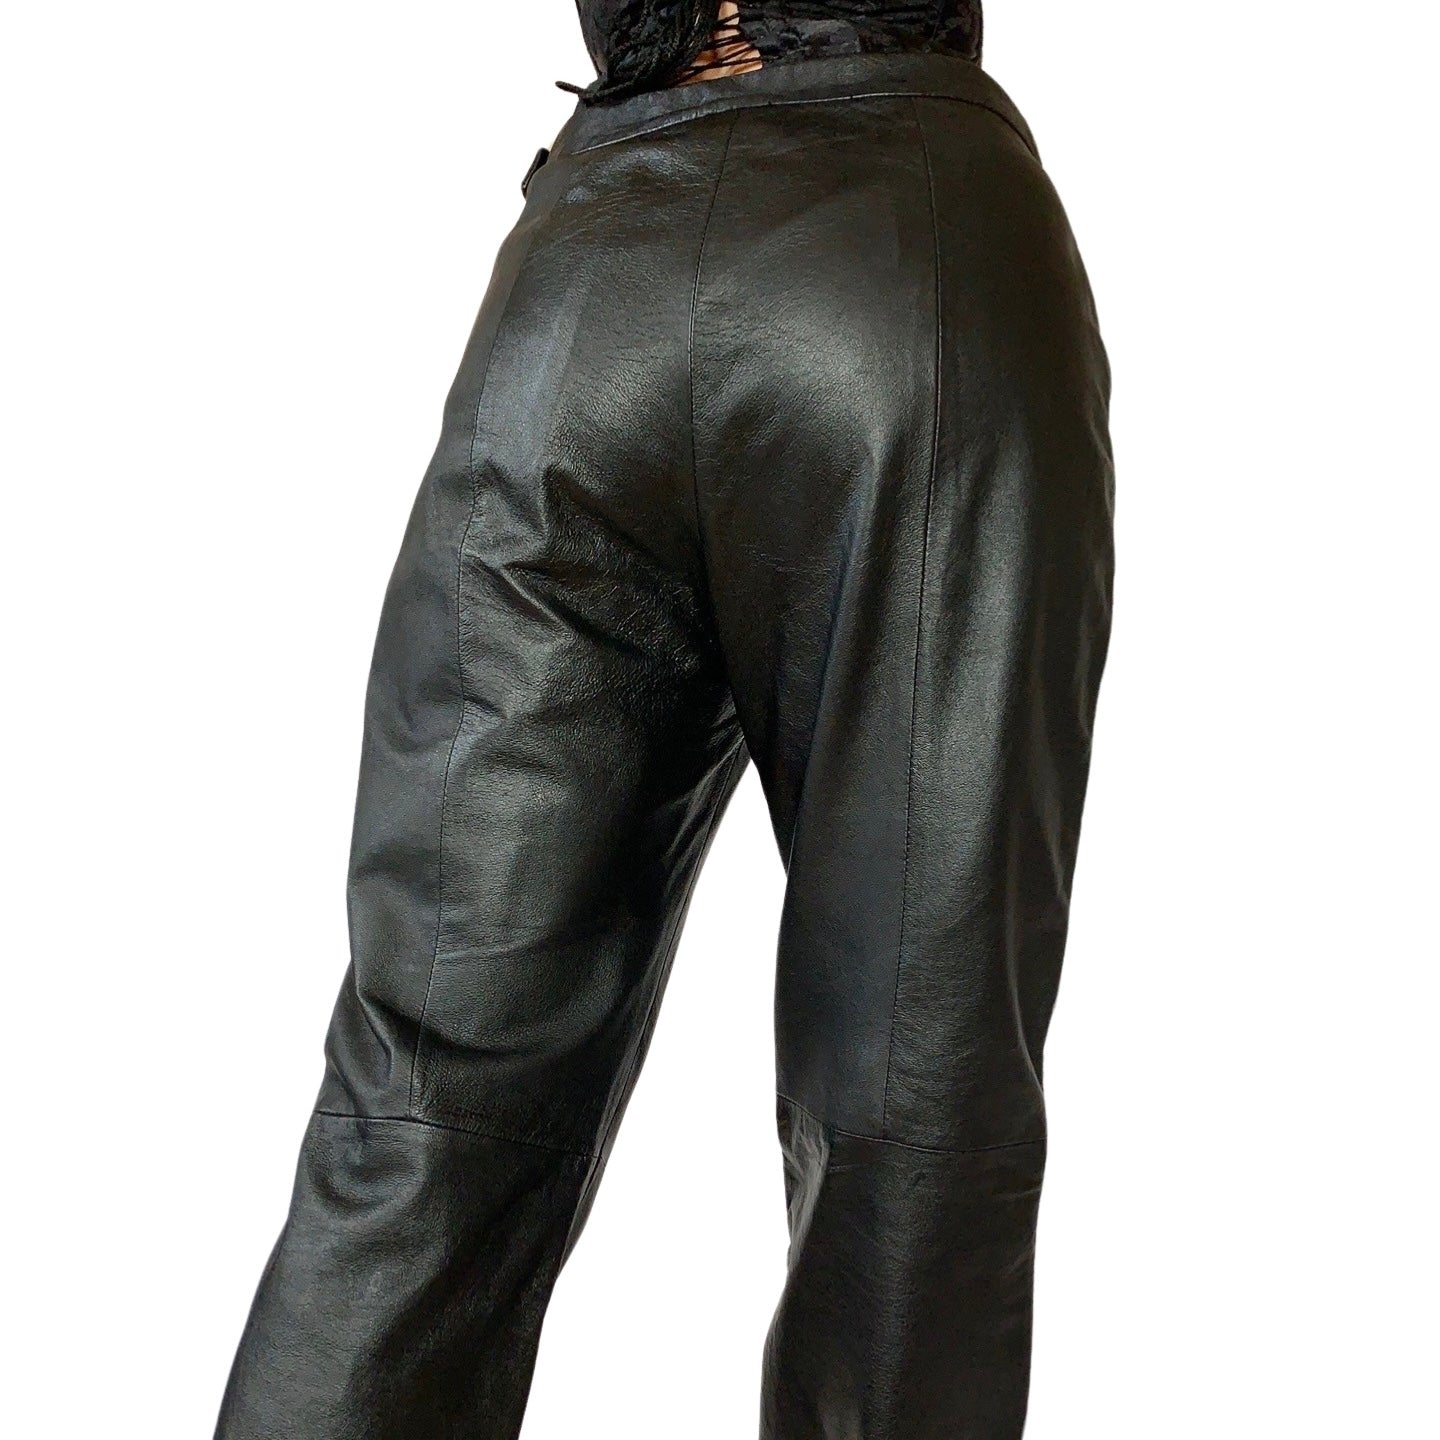 90s Noir Leather Pants (M)